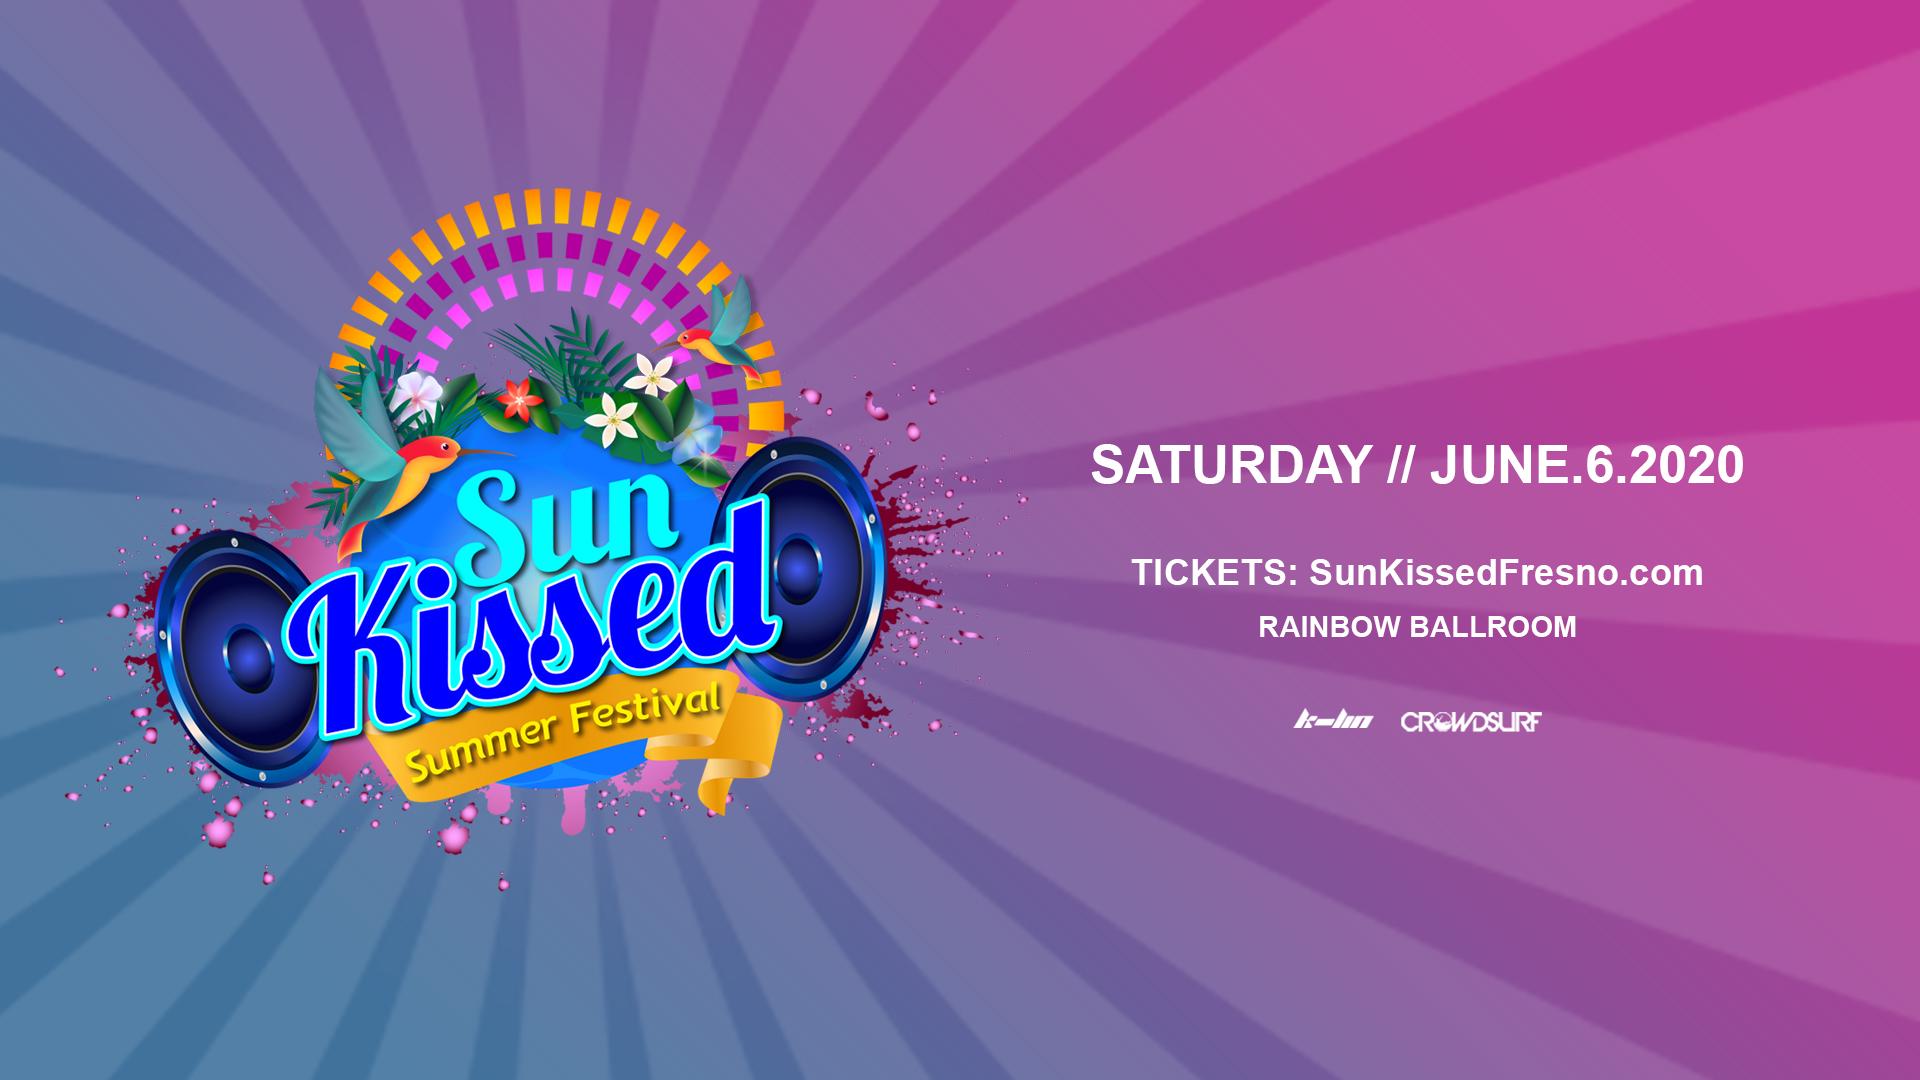 Sun Kissed Summer Festival 2020